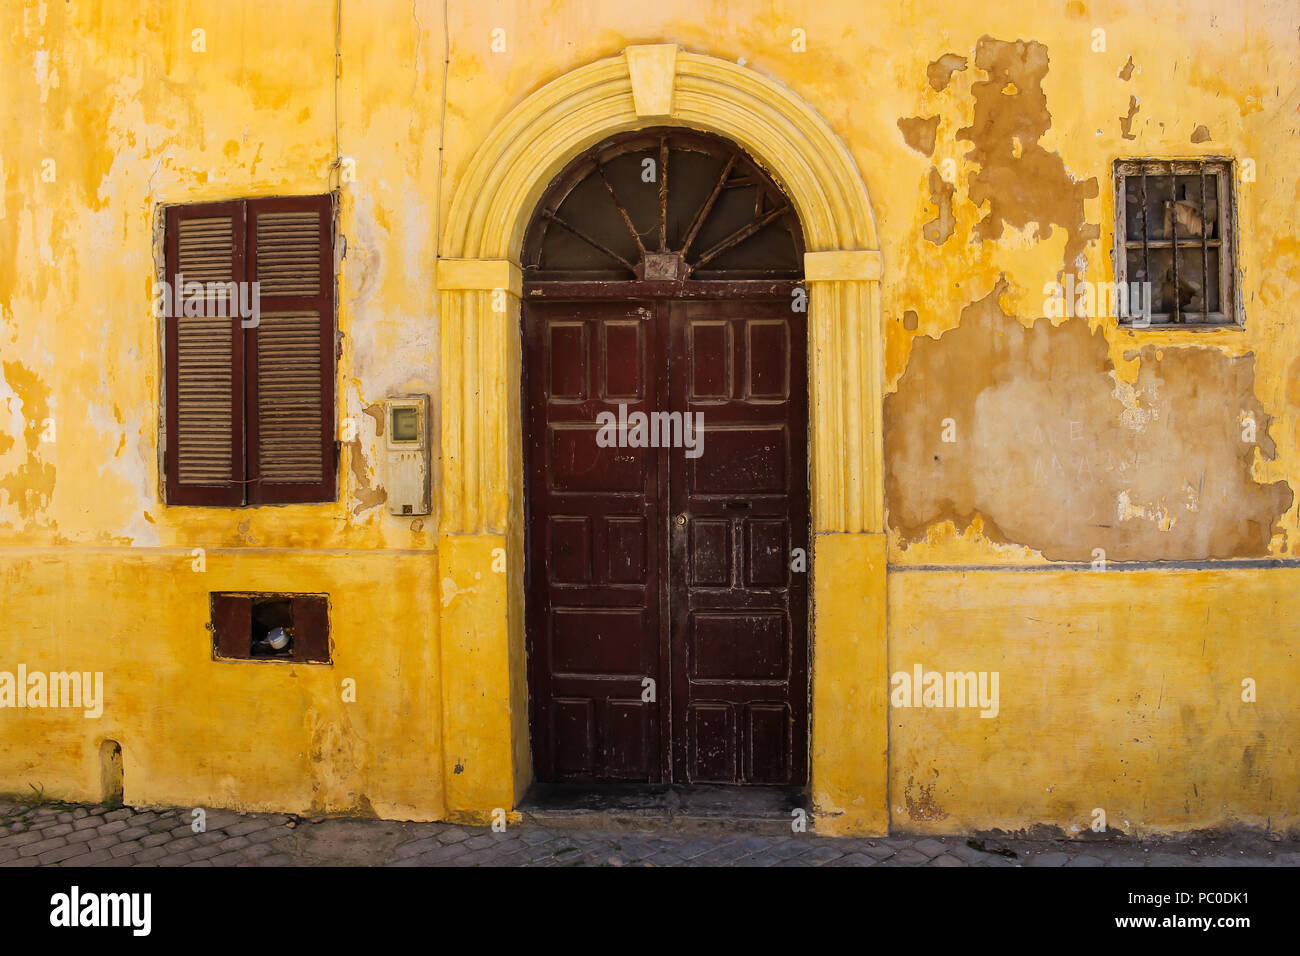 Vieux jaune façade d'une maison en bois avec porte brune avec un arc. Fenêtre avec un obturateur. Dans la rue ancienne forteresse portugaise à El Jadida, Maroc. Banque D'Images